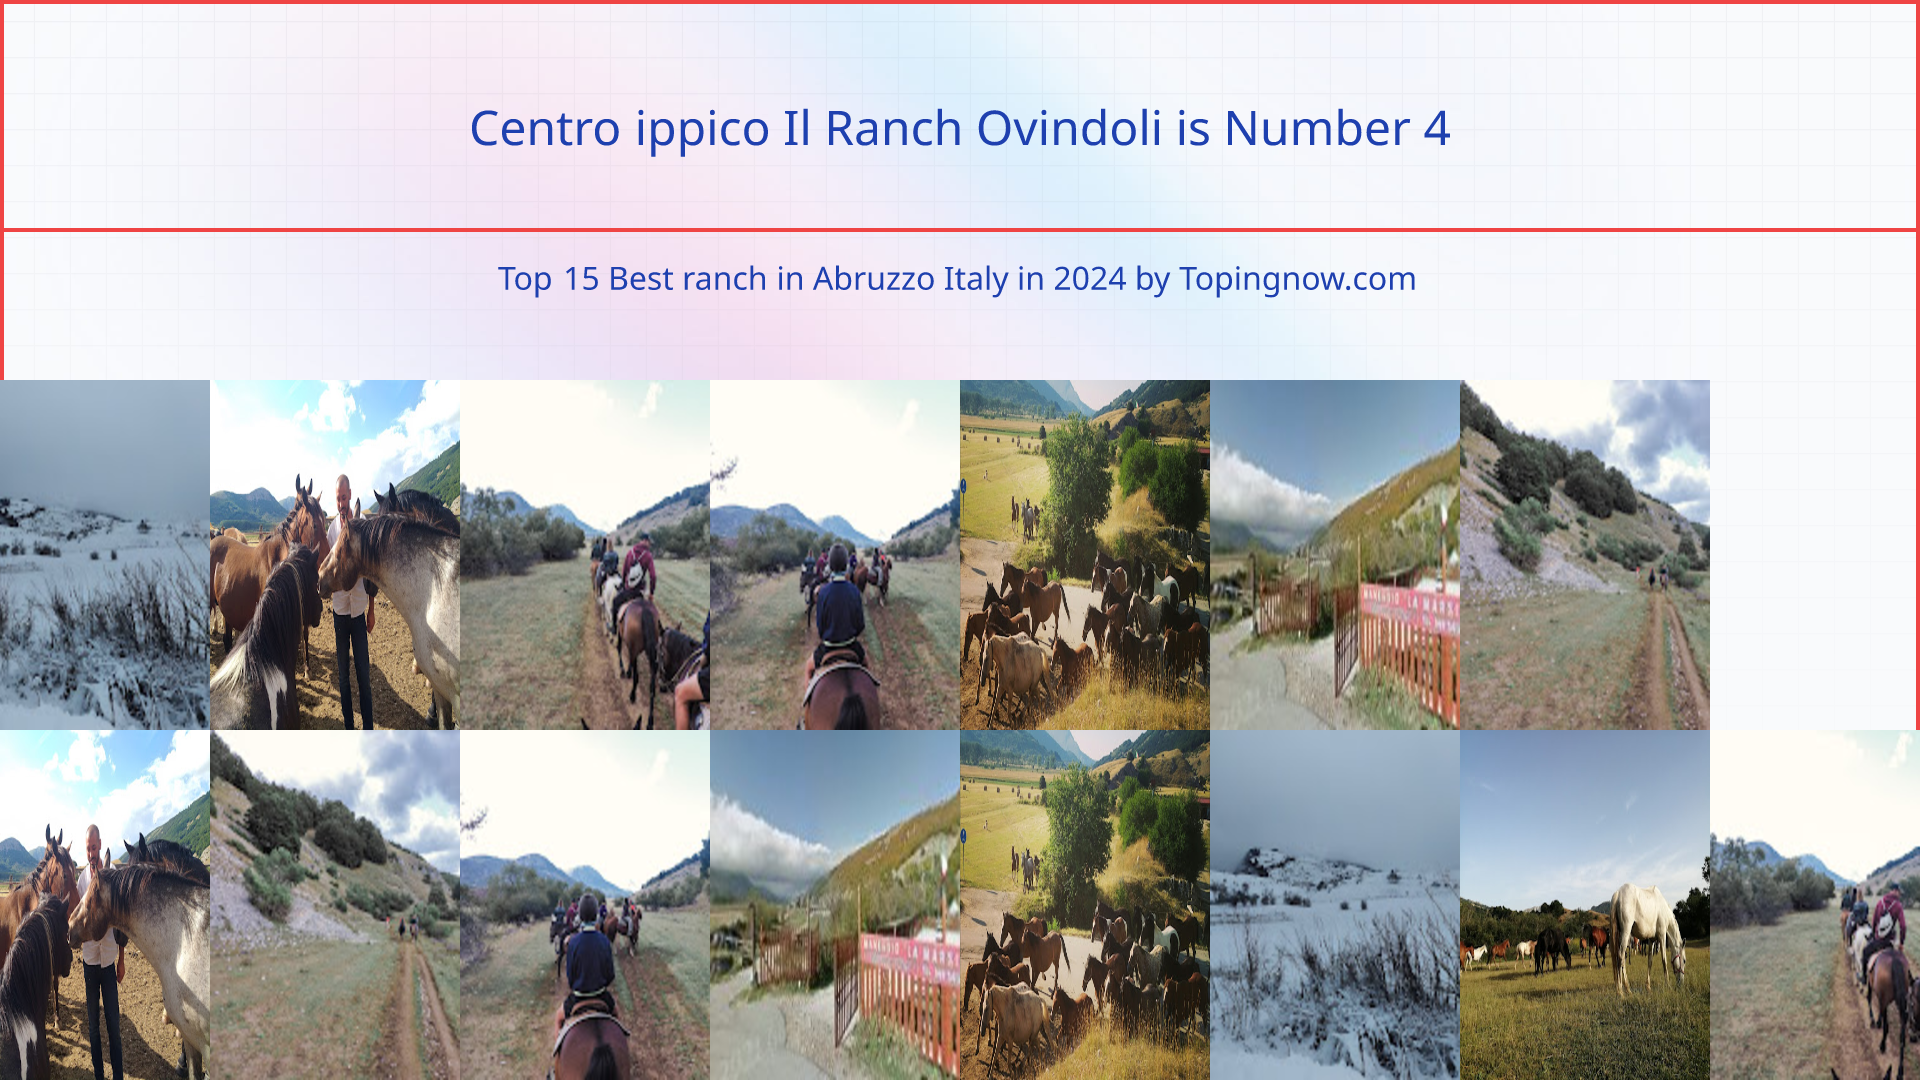 Centro ippico Il Ranch Ovindoli: Top 15 Best ranch in Abruzzo Italy in 2024